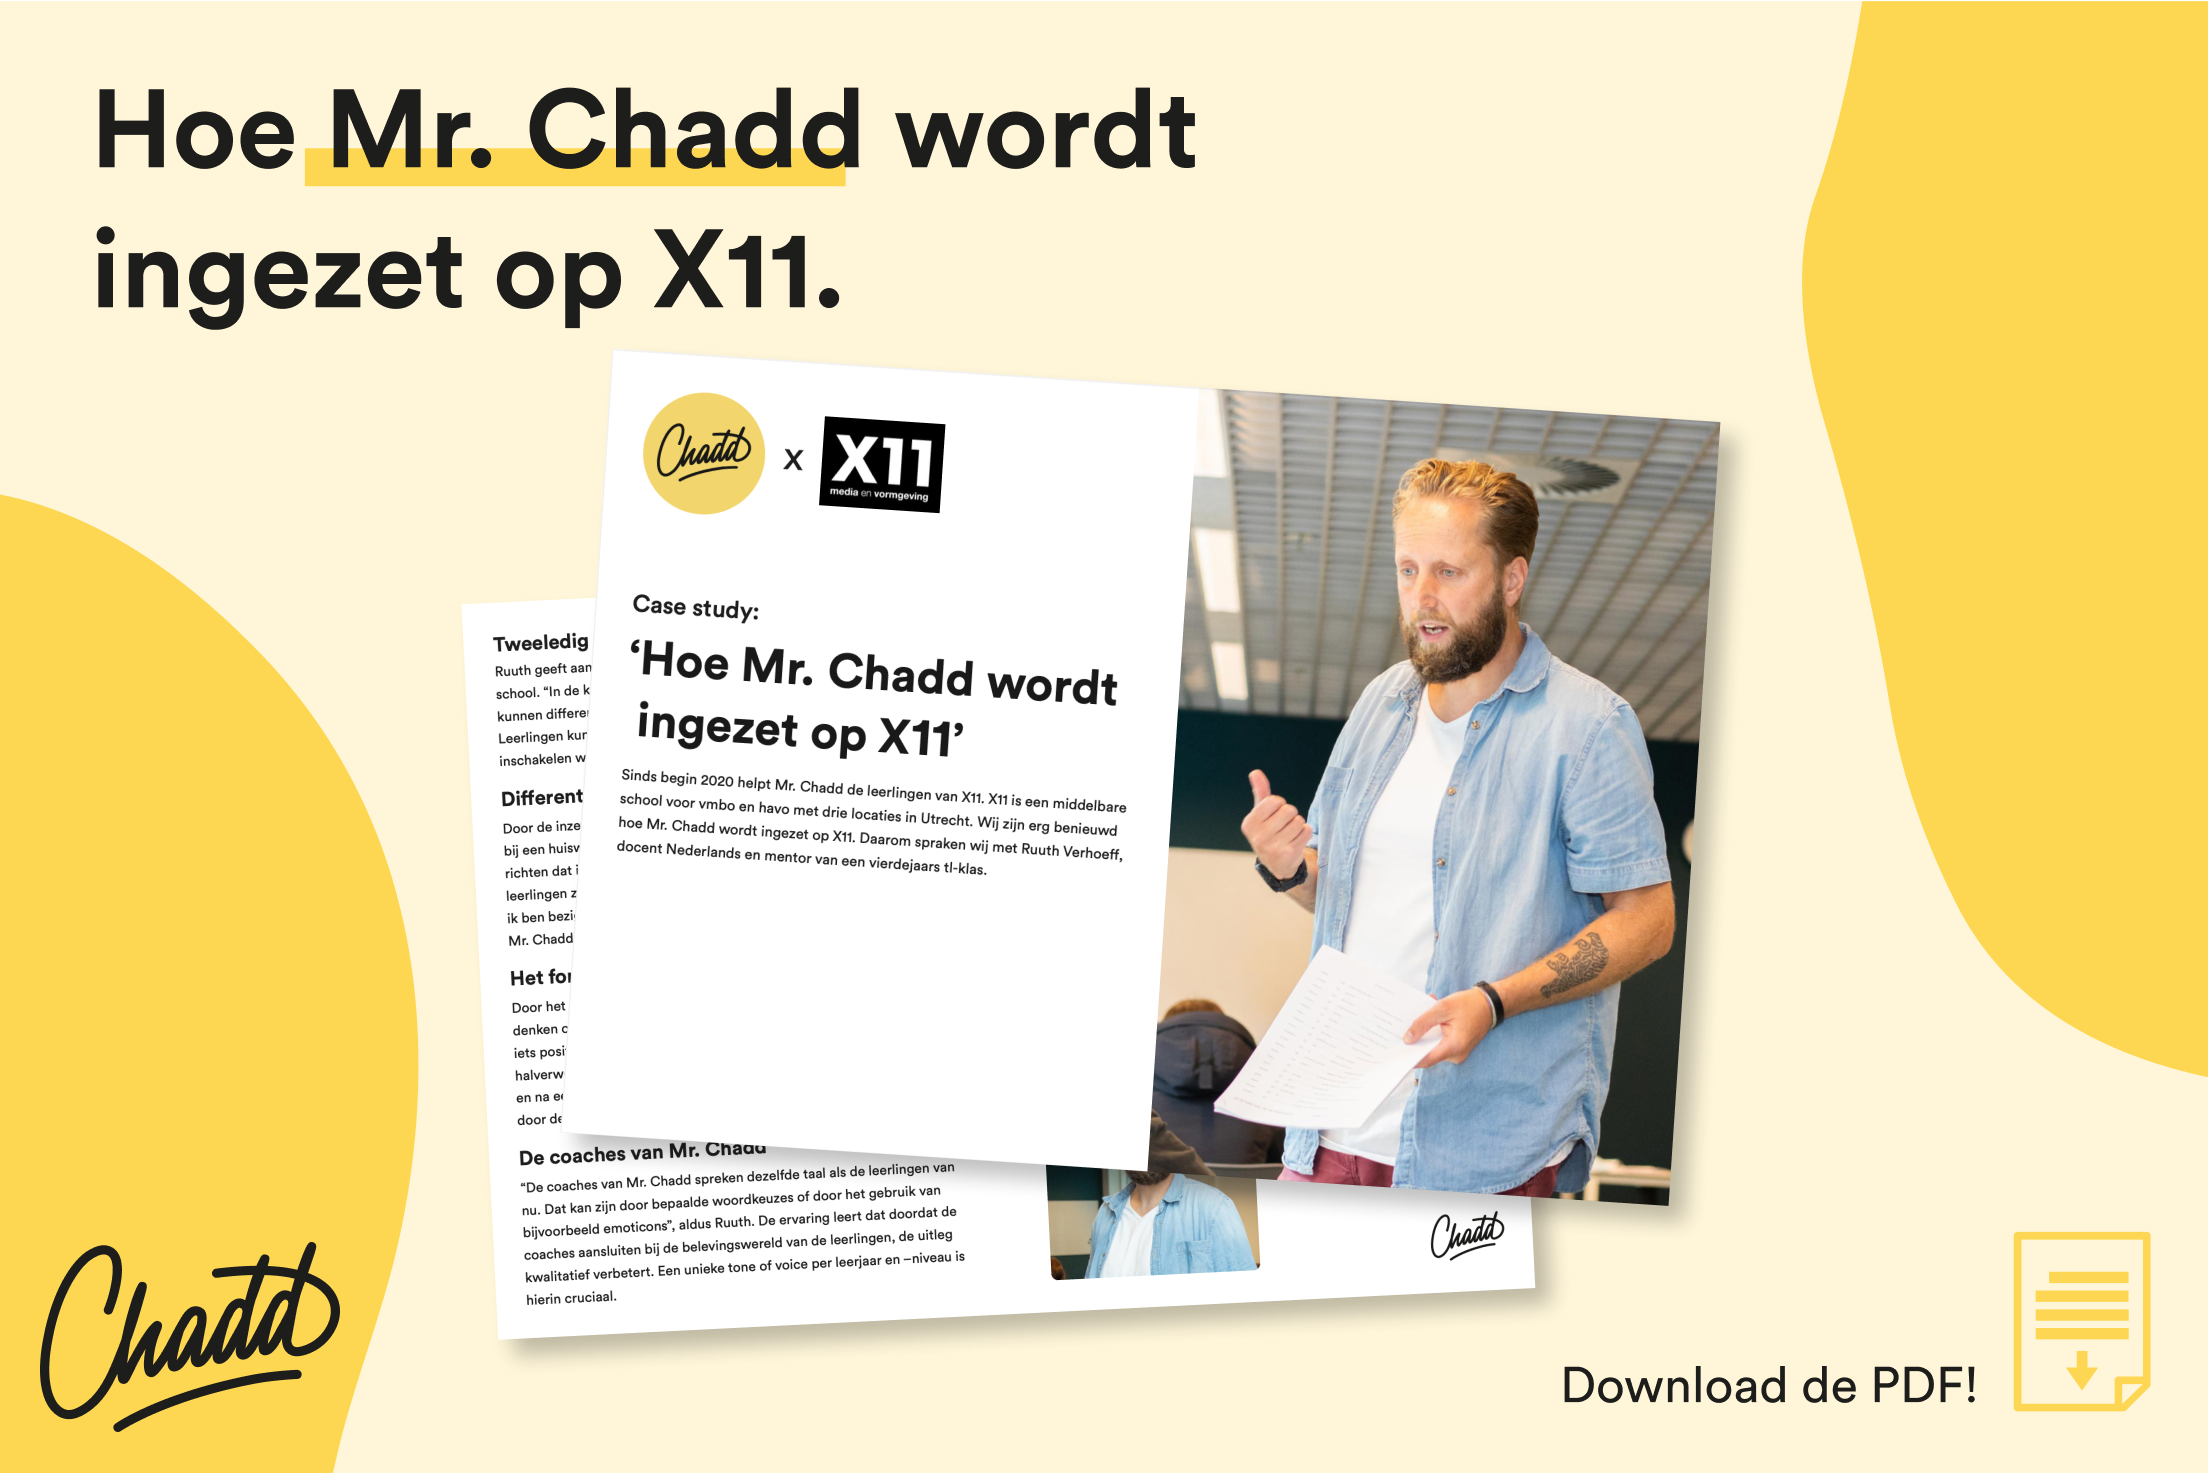 Hoe wordt Mr. Chadd ingezet op het X11